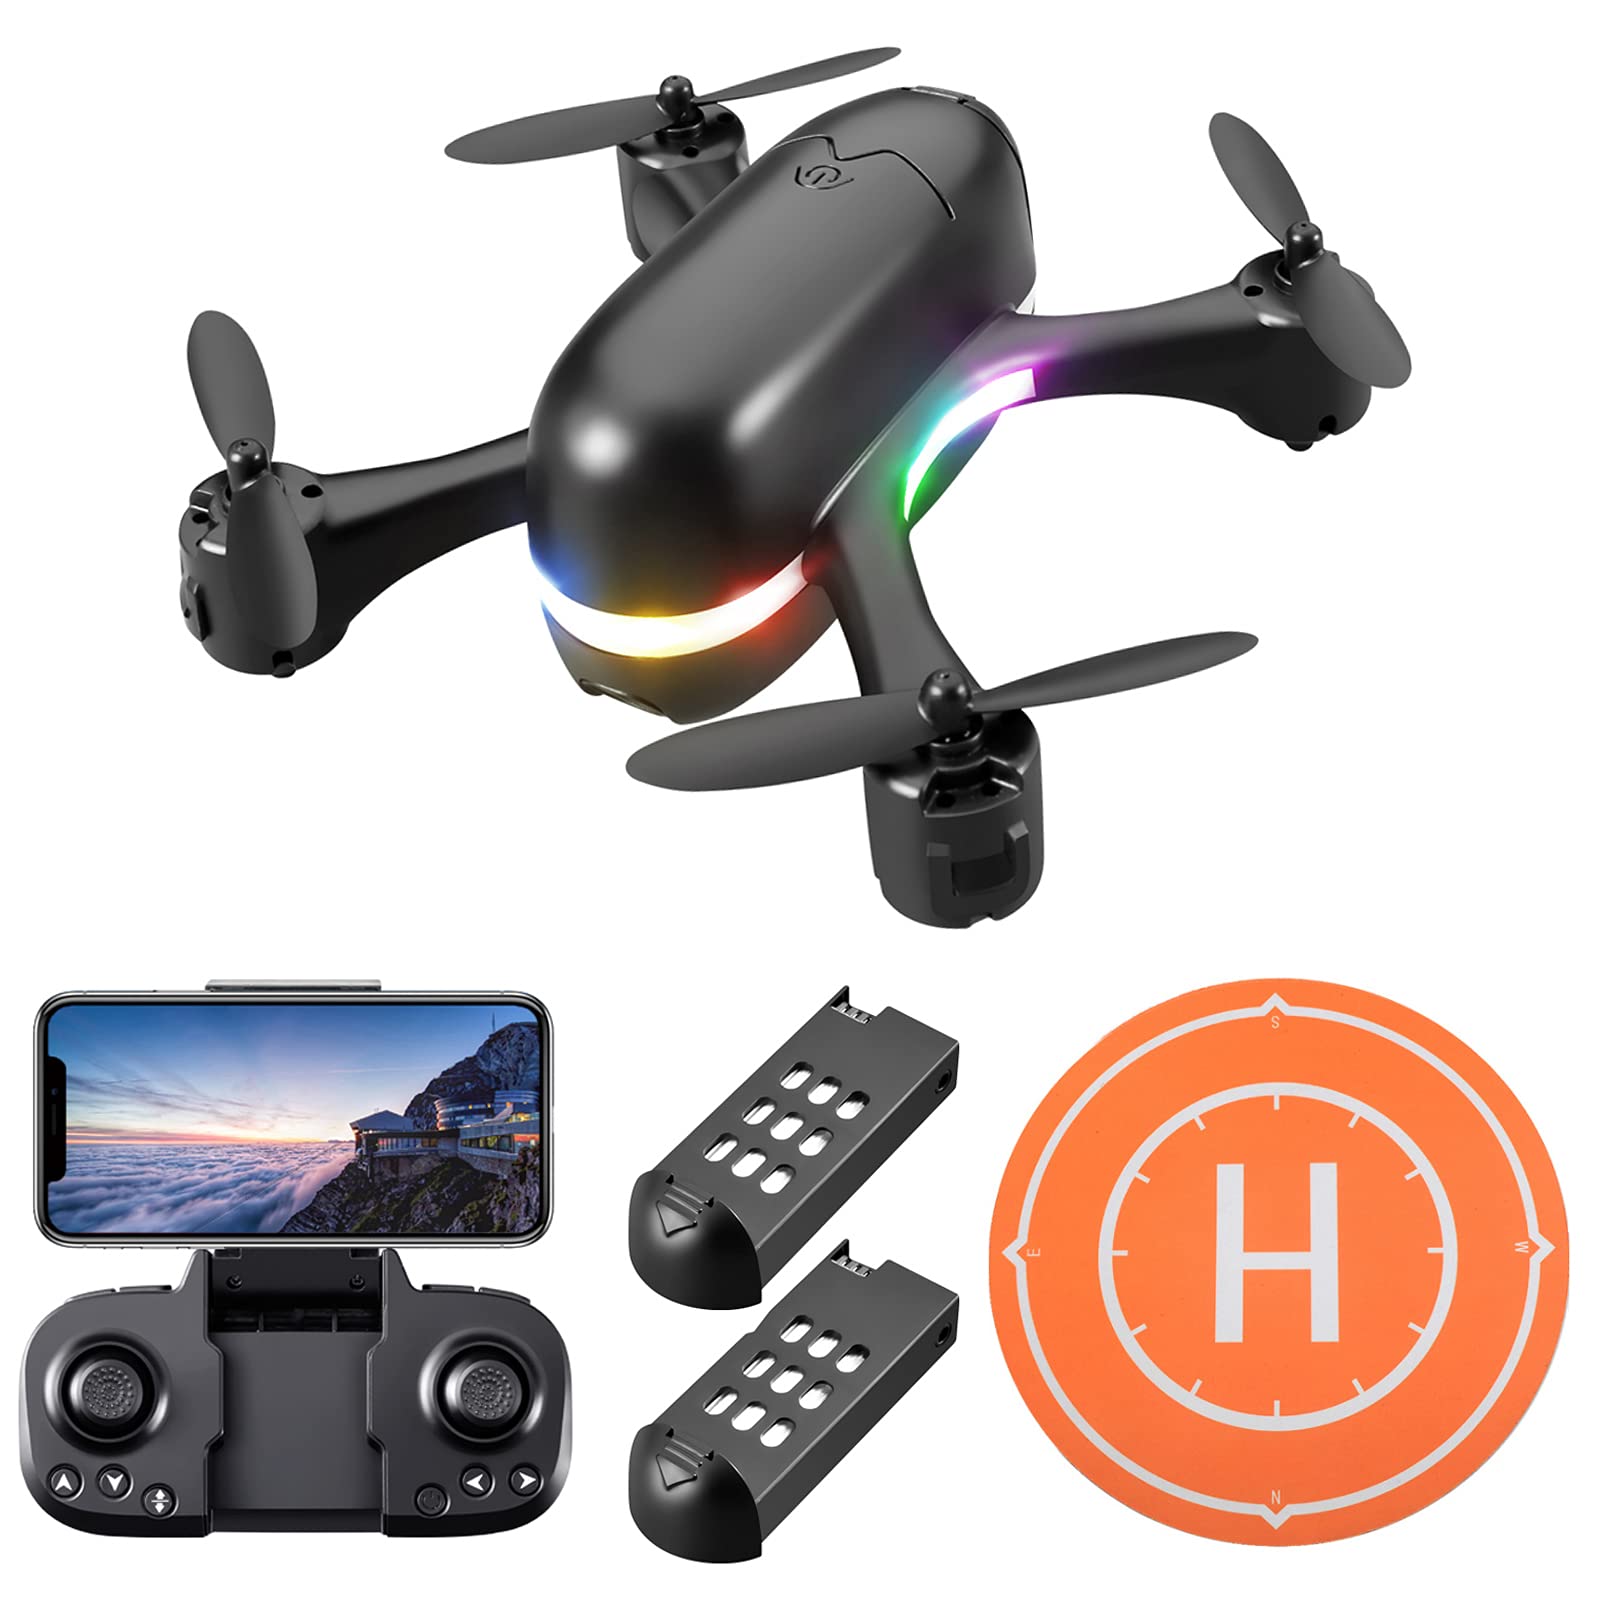 DEVASO Drohne mit Kamera 1080P HD für Kinder, FPV Kamera Live Übertragung Handy mit 30min Flugzeit, Quadrocopter Mini Drohne Spielzeug Geschenk für Kinder, Anfänger